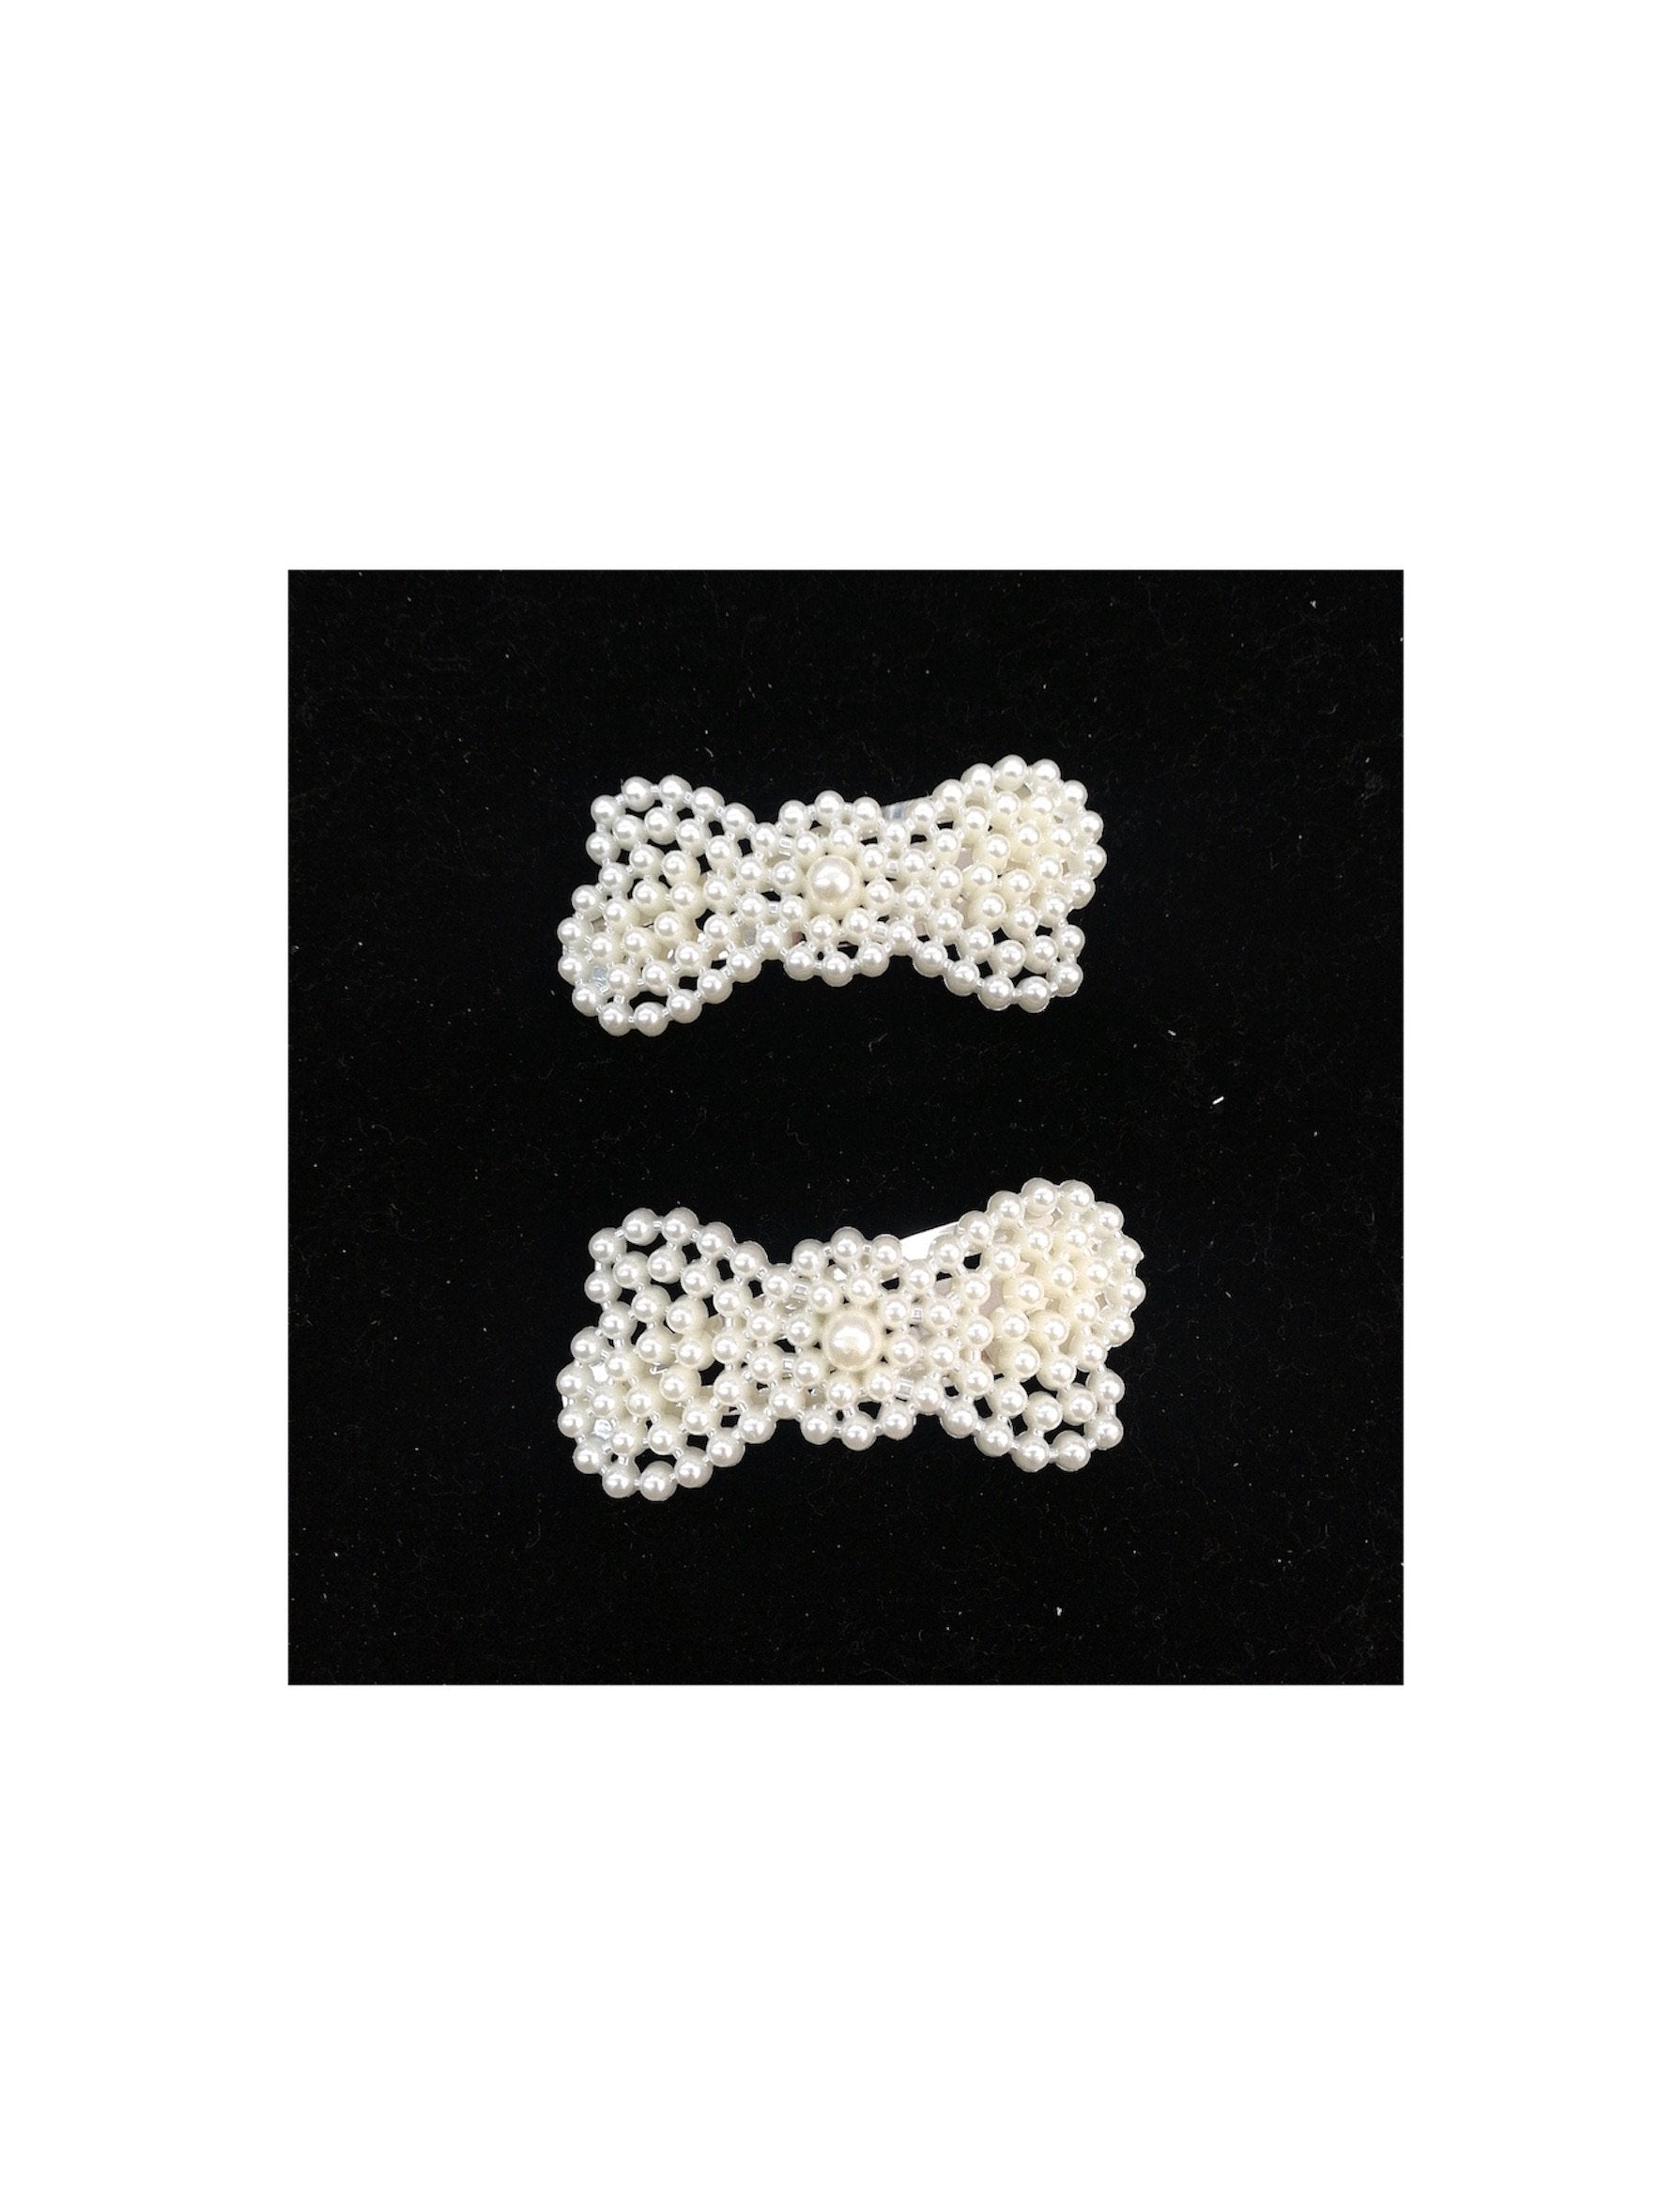 LOT DE 12 - Barrettes Pinces perles noeud papillon   0,60€/unité | Grossiste-pro